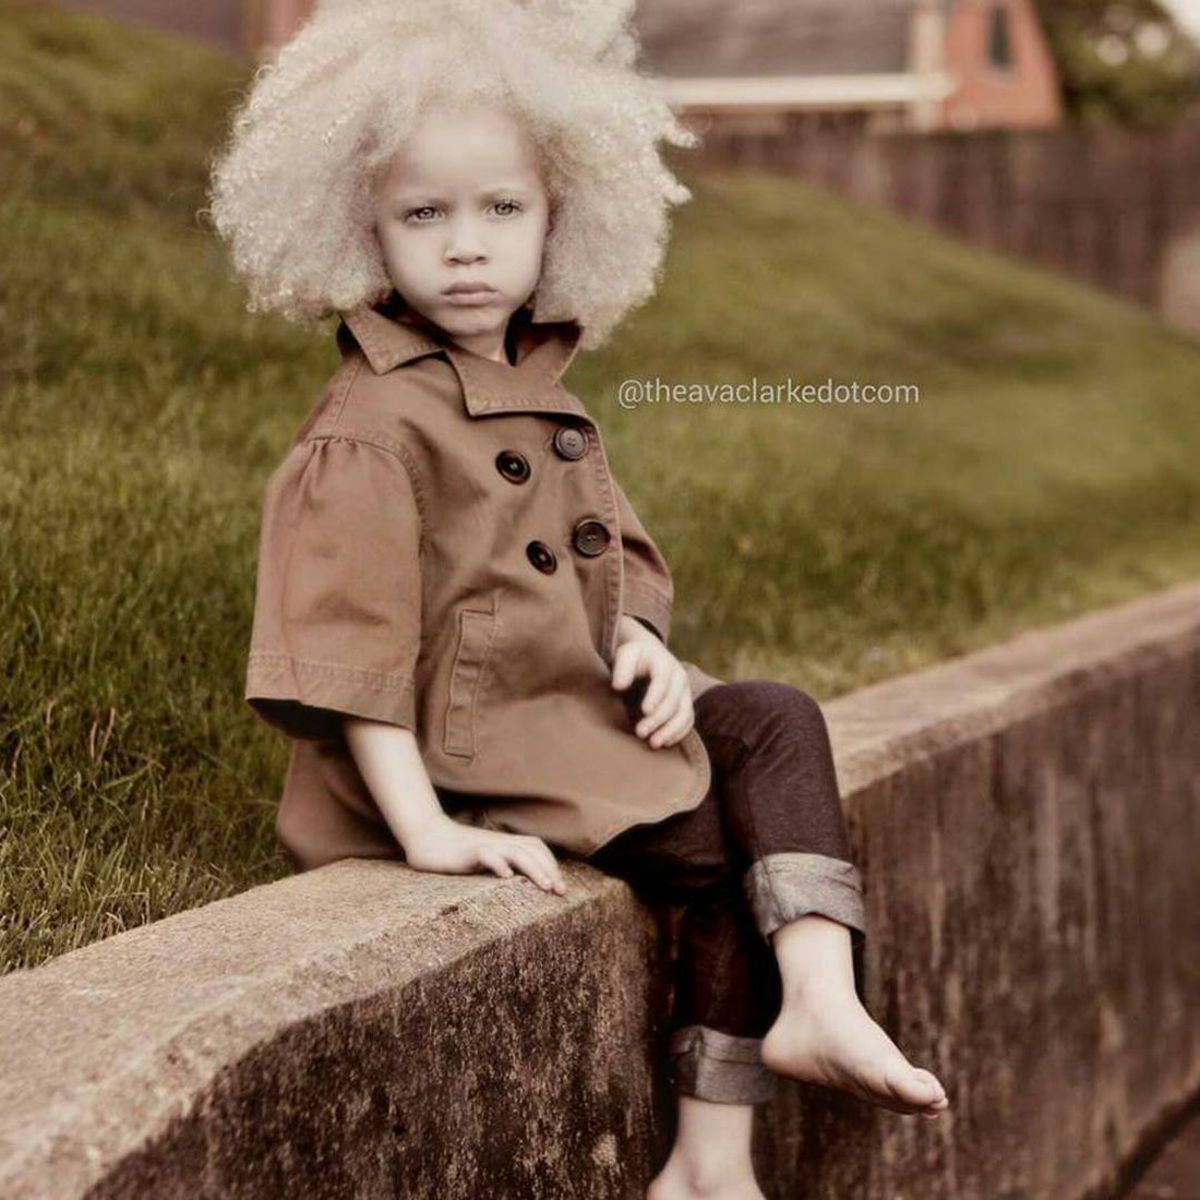 Супер-модель Ава Кларк - девочка альбинос покорила весь мир